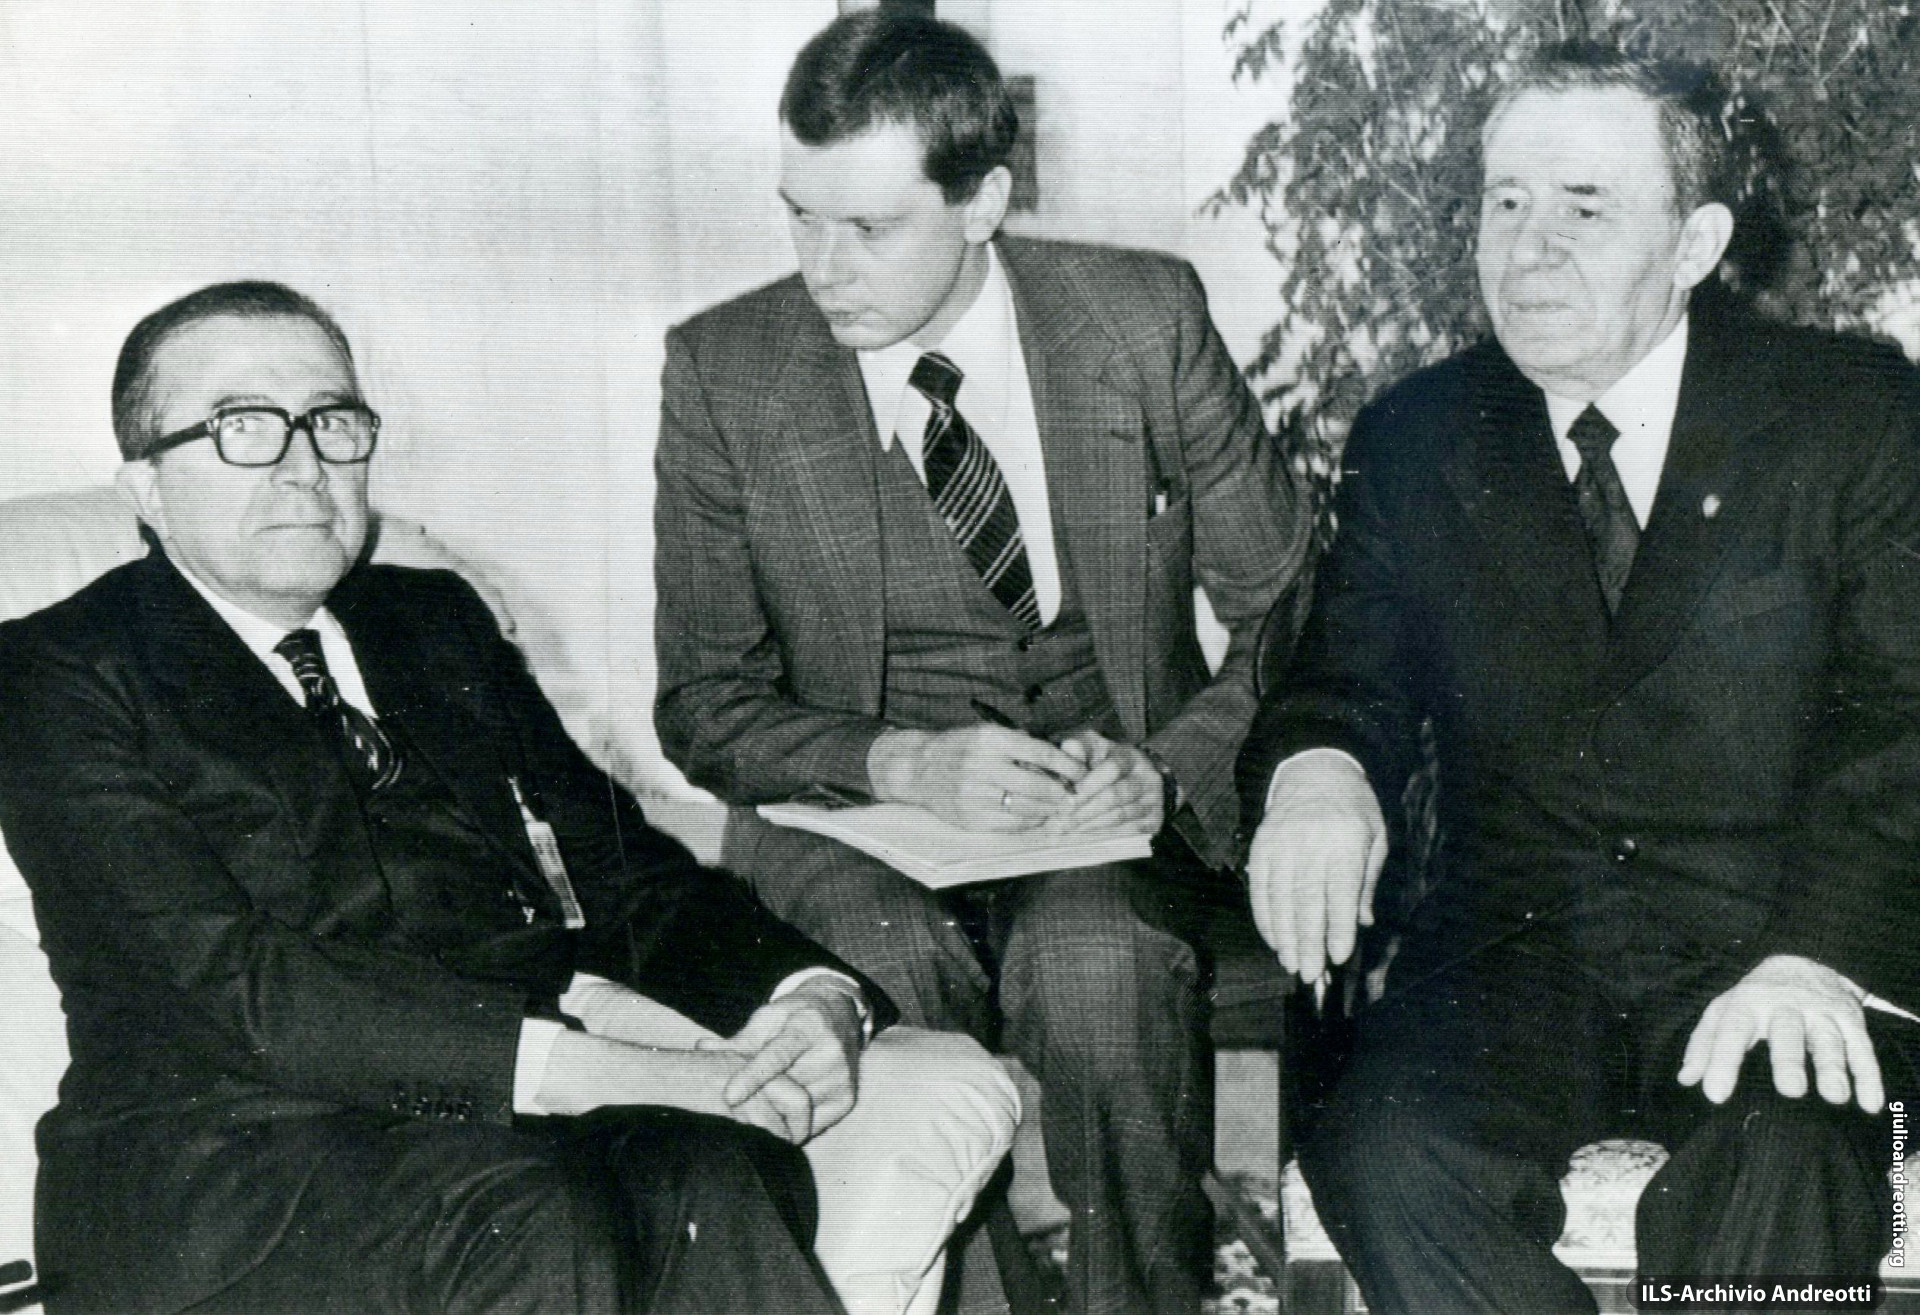 Stoccolma, 19 gennaio 1984. Giulio Andreotti incontra il ministro degli Esteri sovietico Andrei Gromyko.